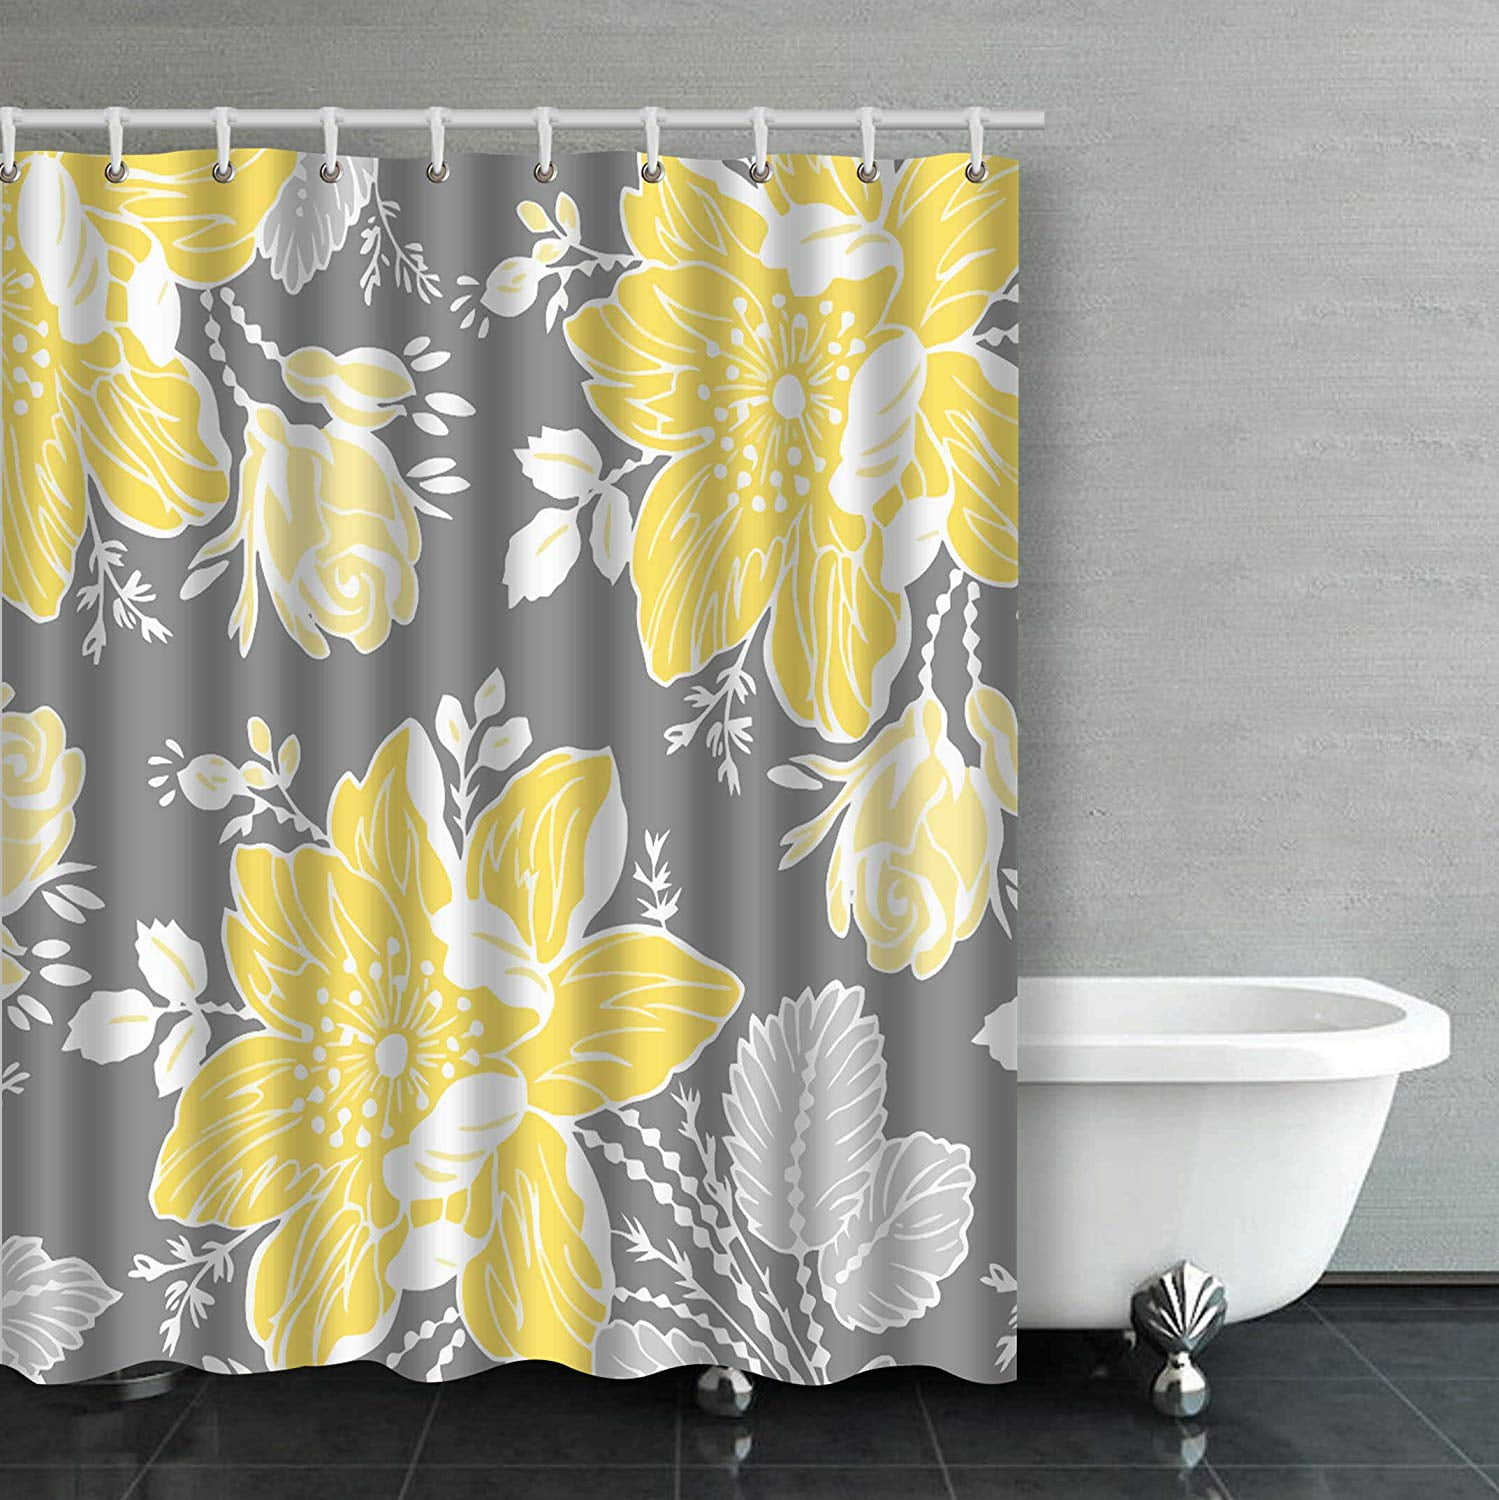 Artjia Yellow Gray White Fl, Yellow And Gray Shower Curtain Set